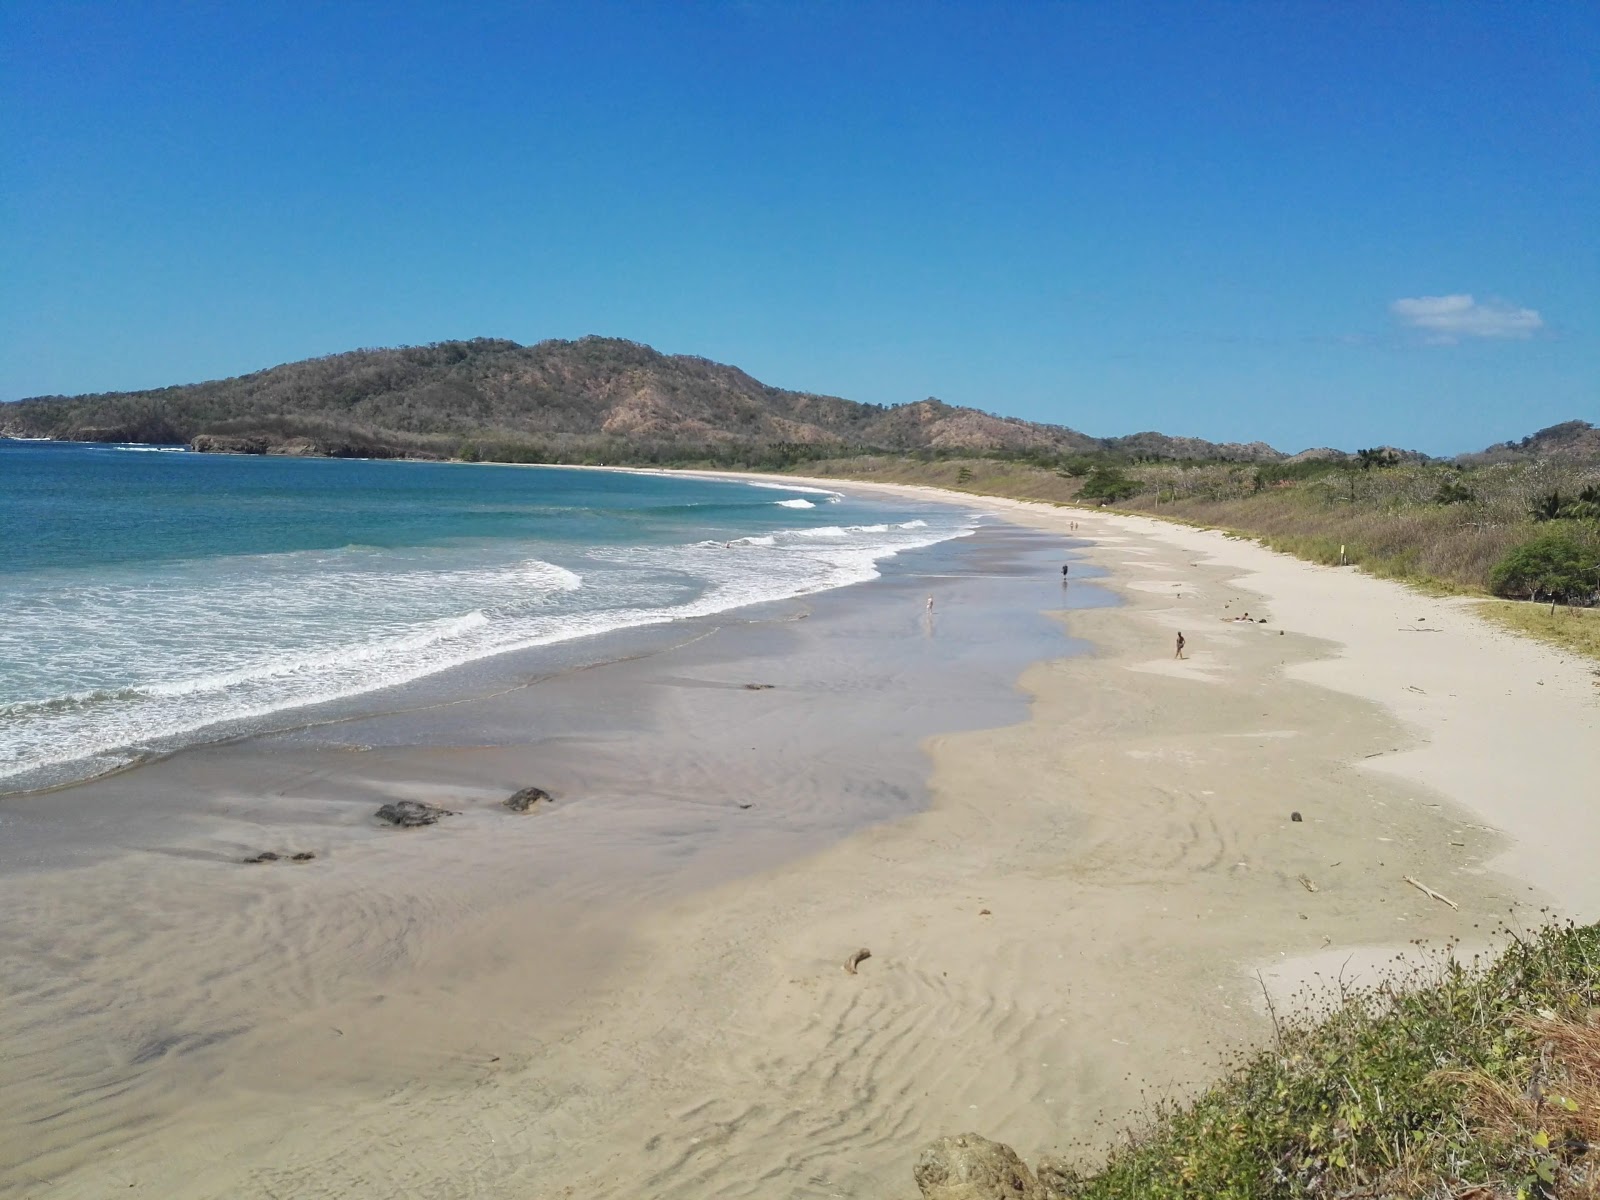 Foto af Playa Ventanas - populært sted blandt afslapningskendere